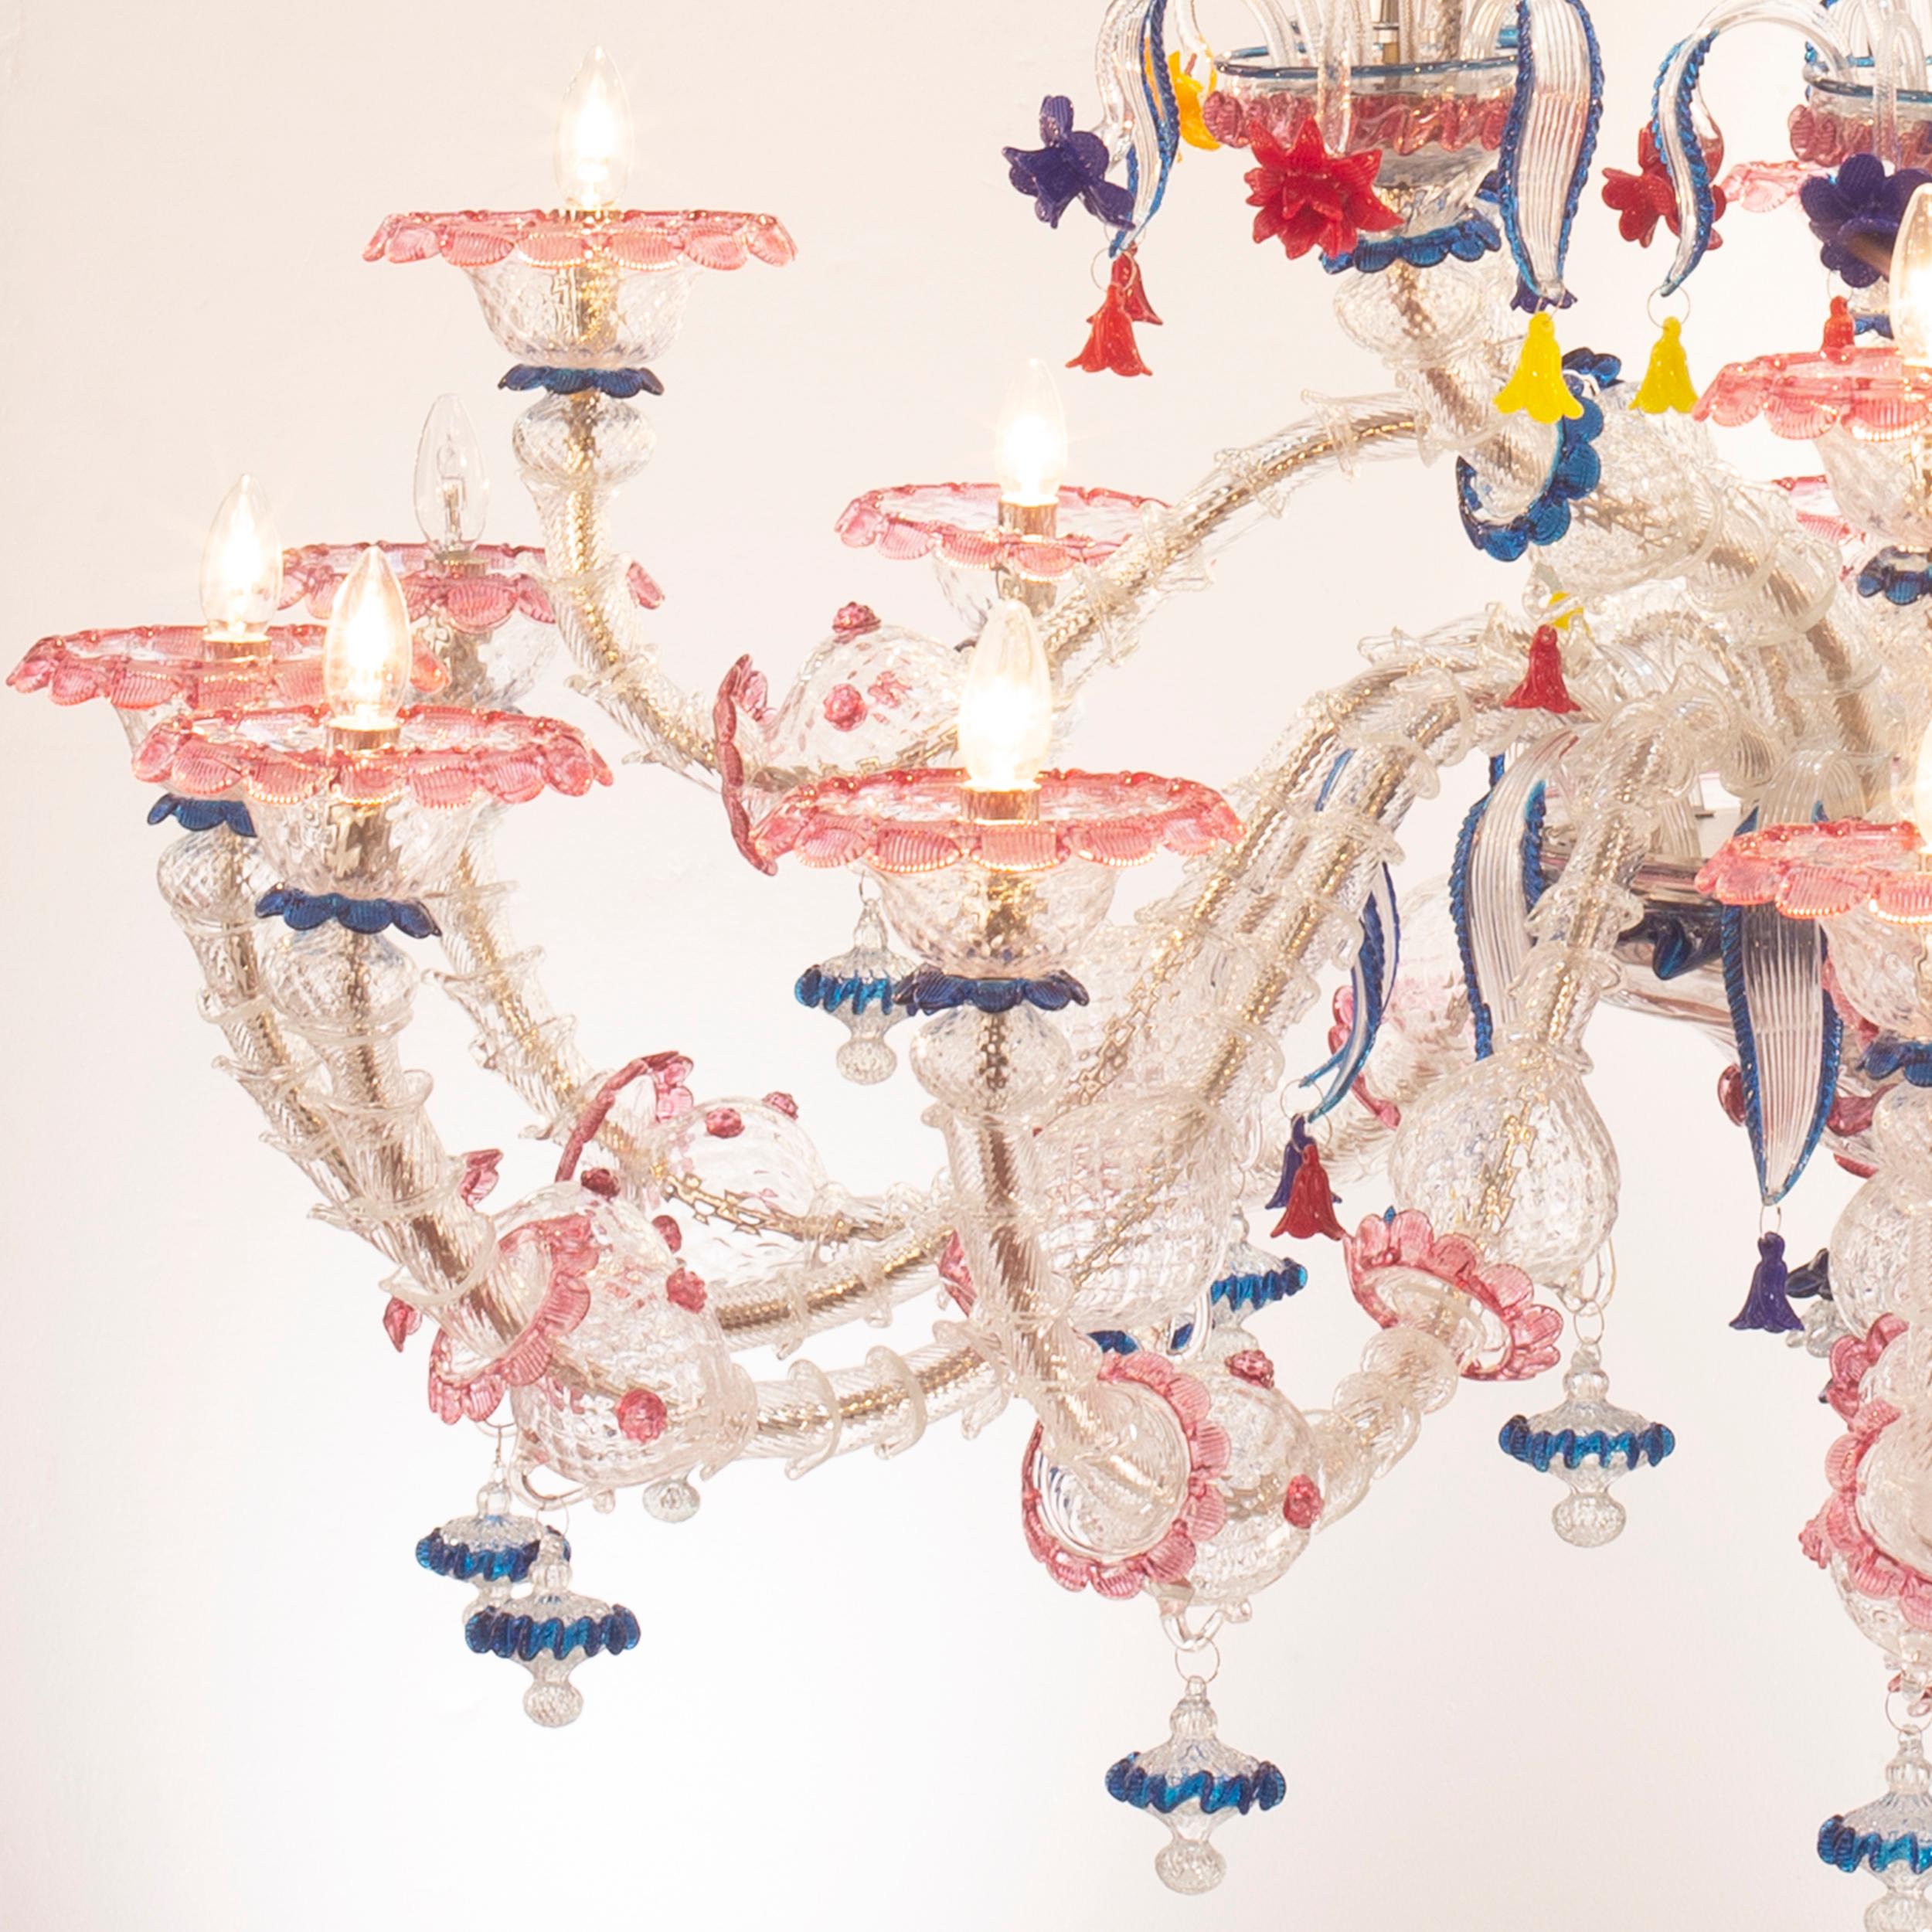 Kia Ora Kronleuchter mit 24 Lichtern aus klarem Murano-Glas mit blauen und rubinroten Verzierungen und mehrfarbigen Details aus Glaspaste.

Kia Ora ist die Kombination der traditionellen venezianischen Struktur mit knalligen Farben. Die